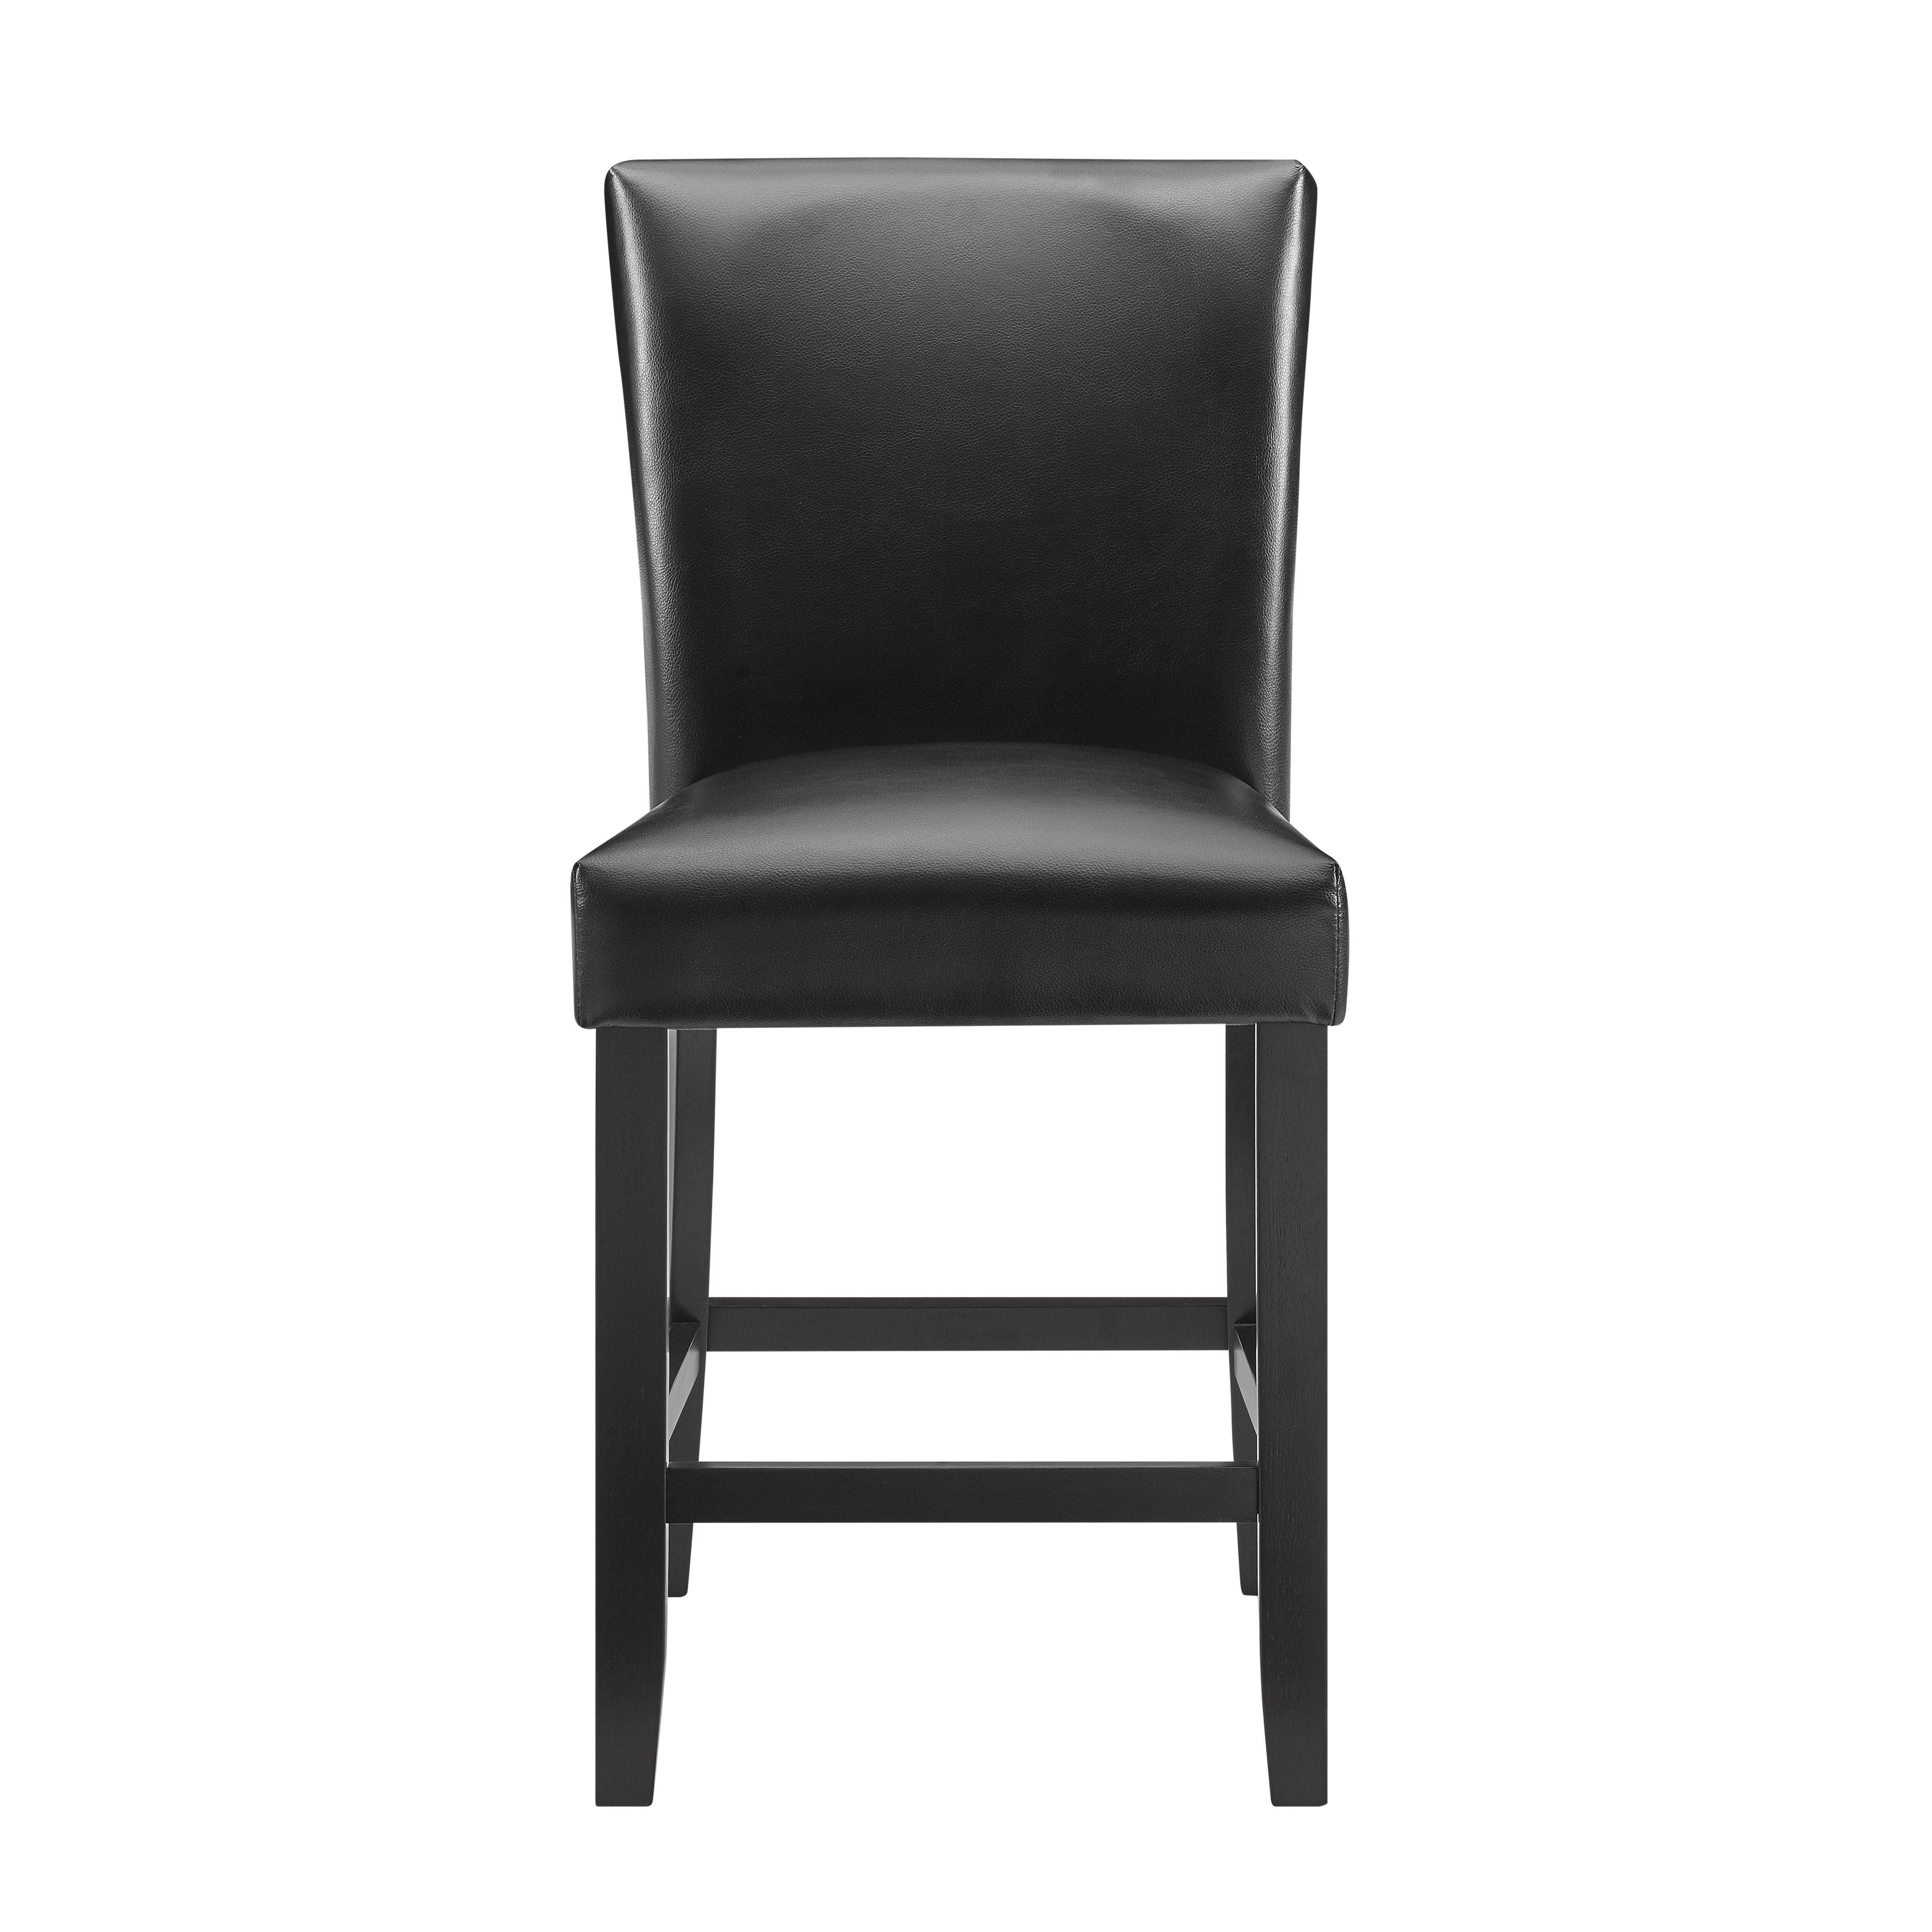 Steve Silver Furniture - Carrara - Counter Chair (Set of 2) - Black - 5th Avenue Furniture